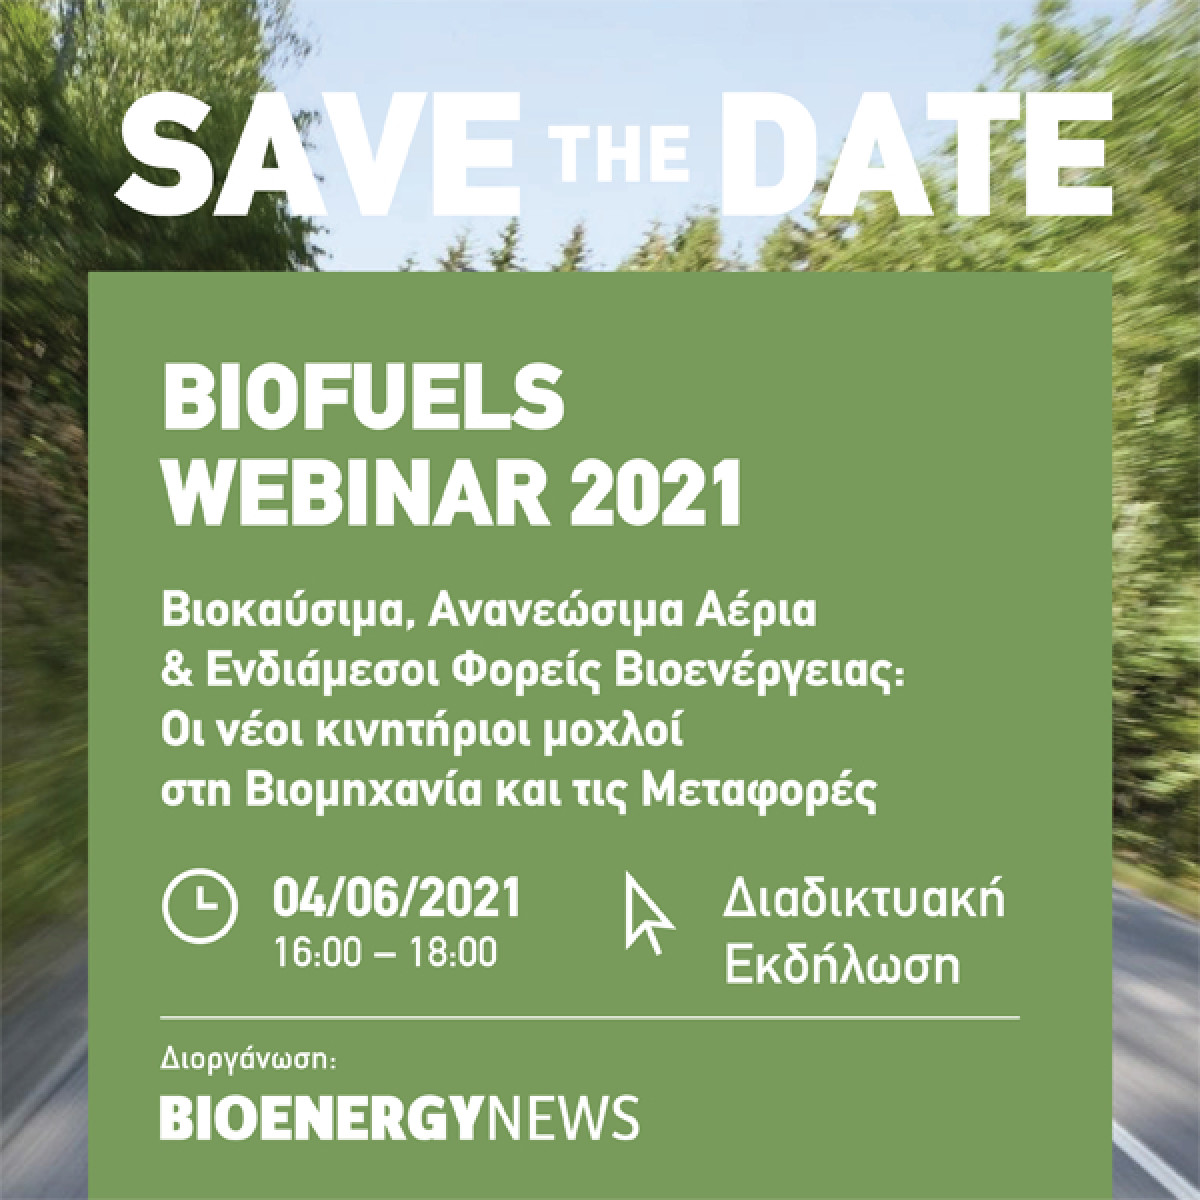 Σήμερα το BIOFUELS WEBINAR από το BIOENERGY NEWS: Βιοκαύσιμα, Ανανεώσιμα Αέρια & Ενδιάμεσοι Φορείς Βιοενέργειας: Οι νέοι κινητήριοι μοχλοί στη Βιομηχανία και τις Μεταφορές